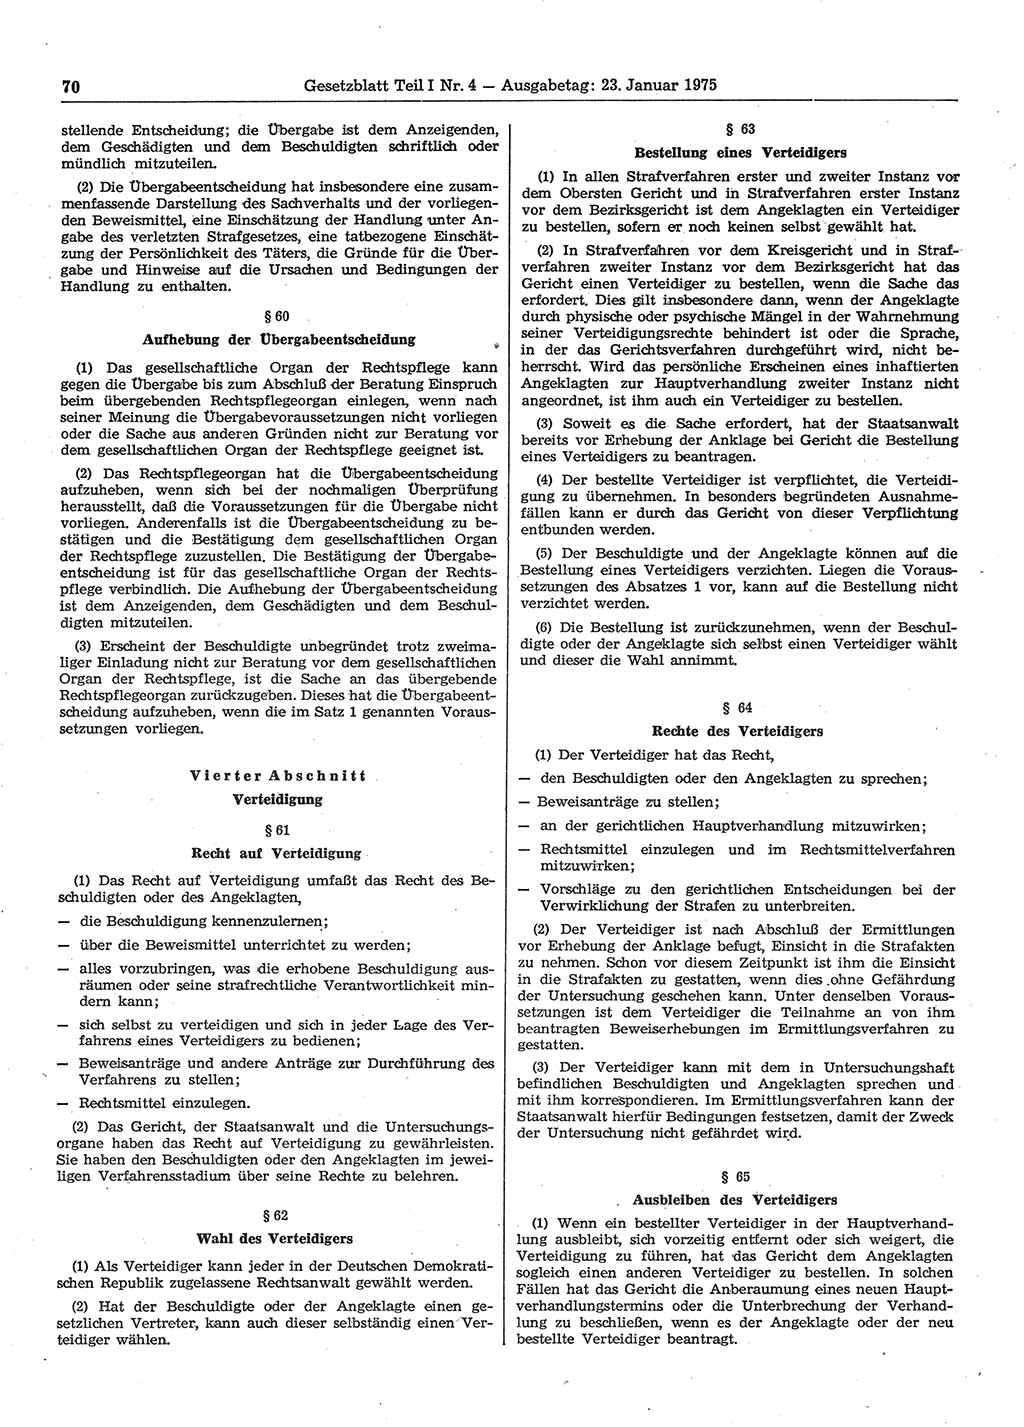 Gesetzblatt (GBl.) der Deutschen Demokratischen Republik (DDR) Teil Ⅰ 1975, Seite 70 (GBl. DDR Ⅰ 1975, S. 70)